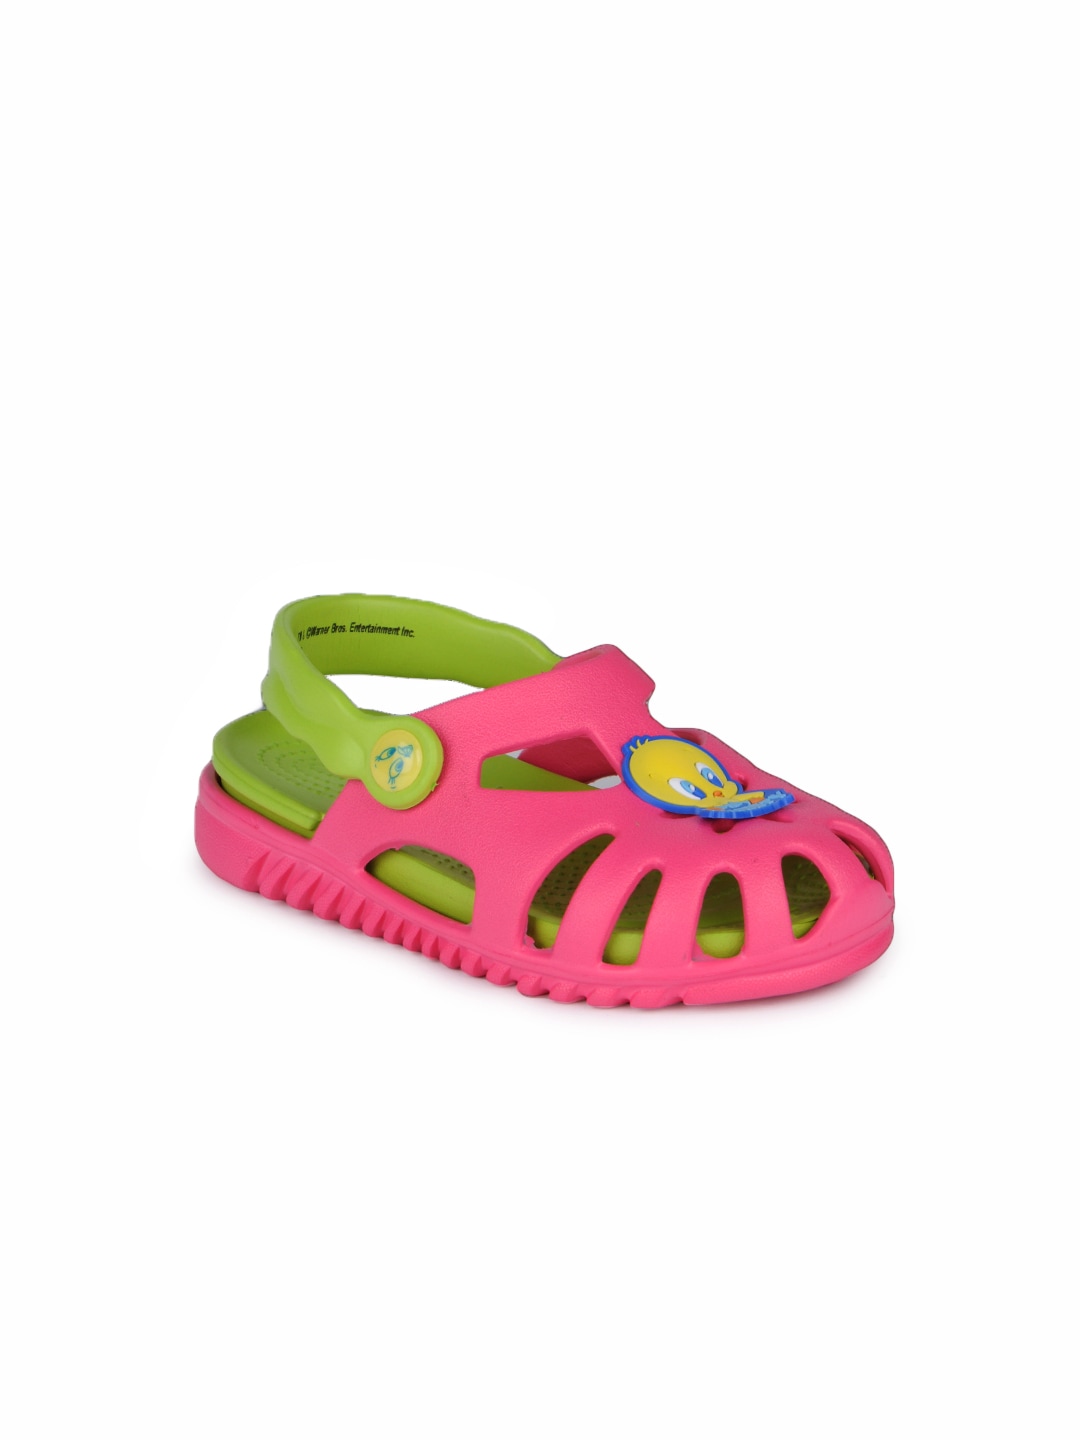 Warner Bros Kids Unisex Pink Sandals